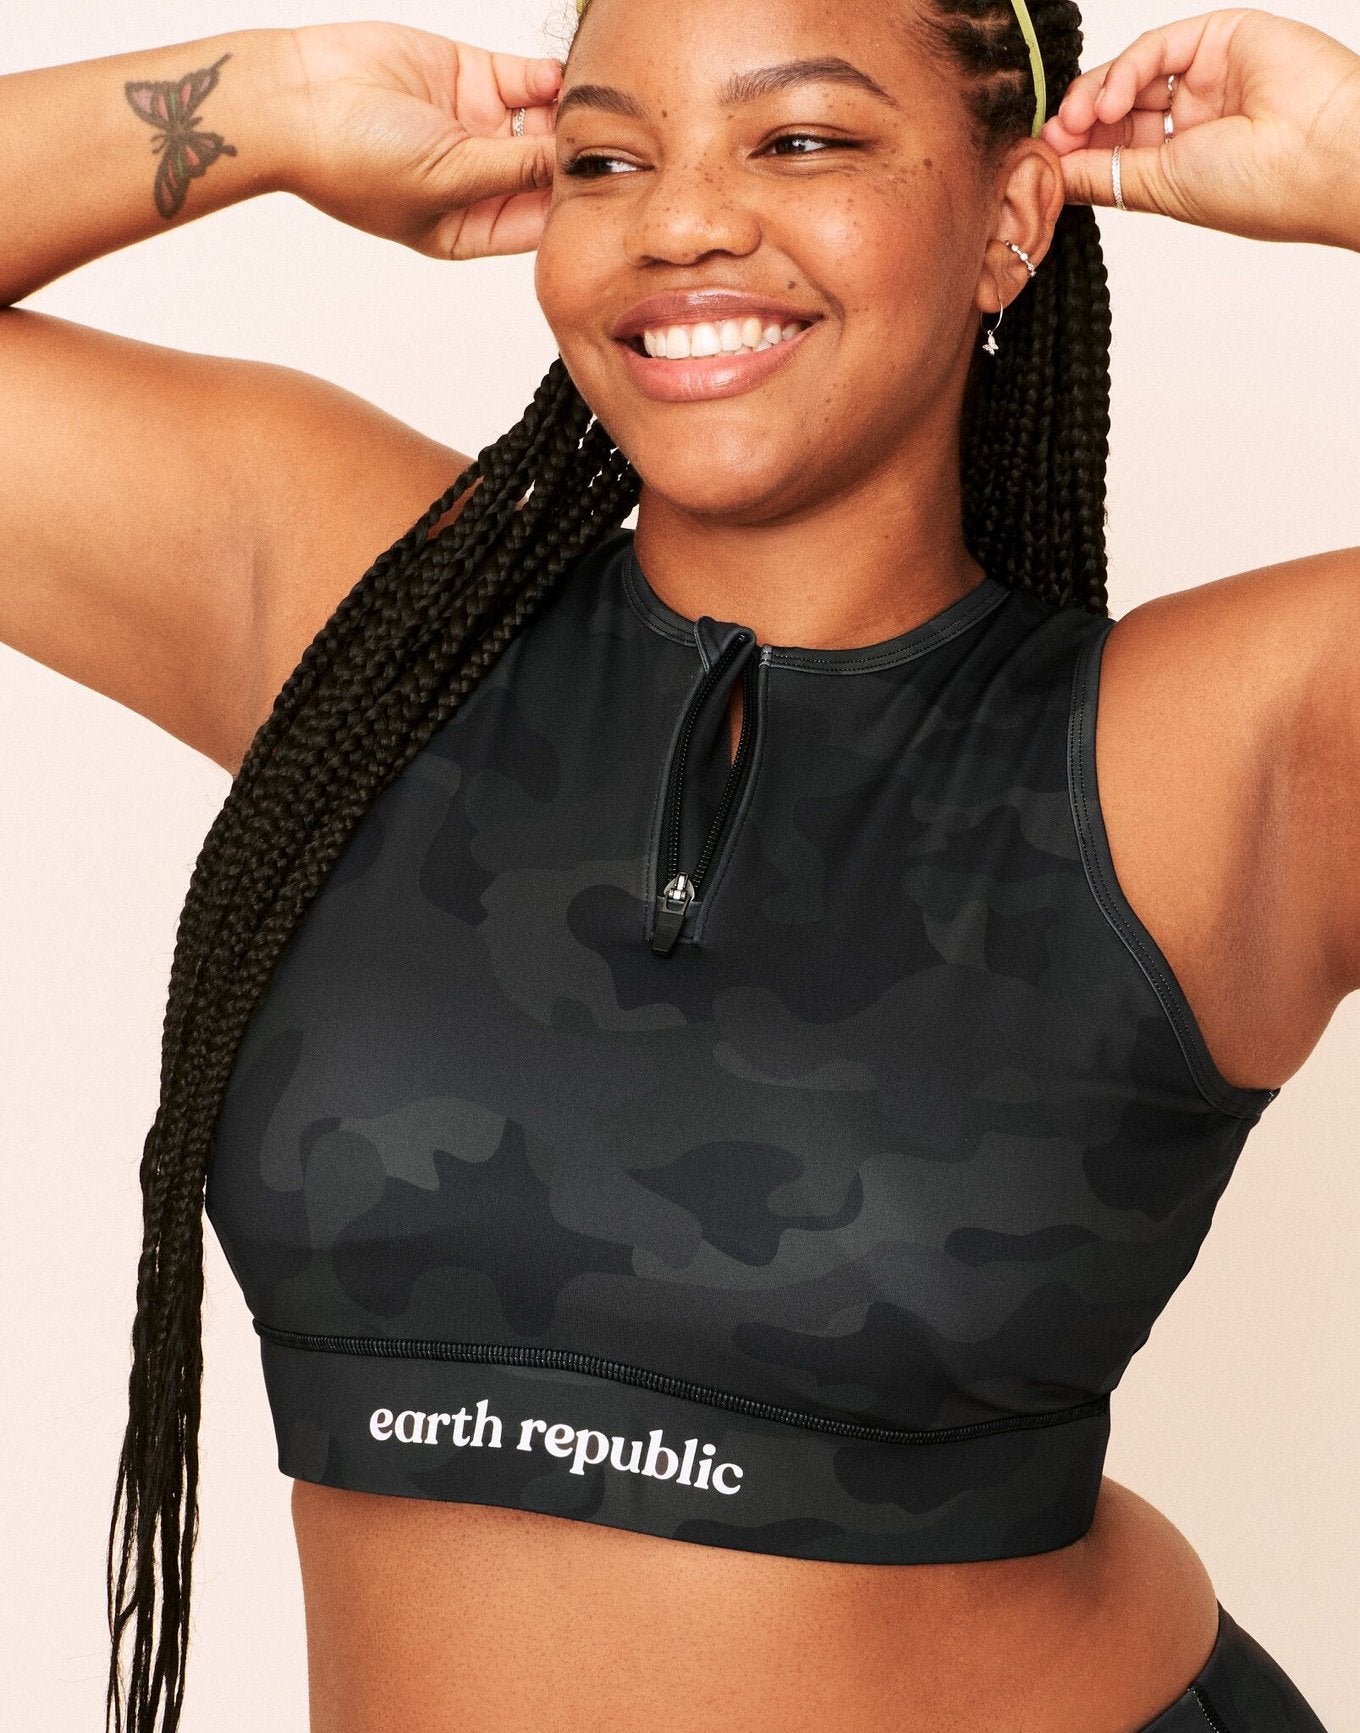 Earth Republic Axelle Sports Bra Sports Bra in color Dark Camo and shape sports bra